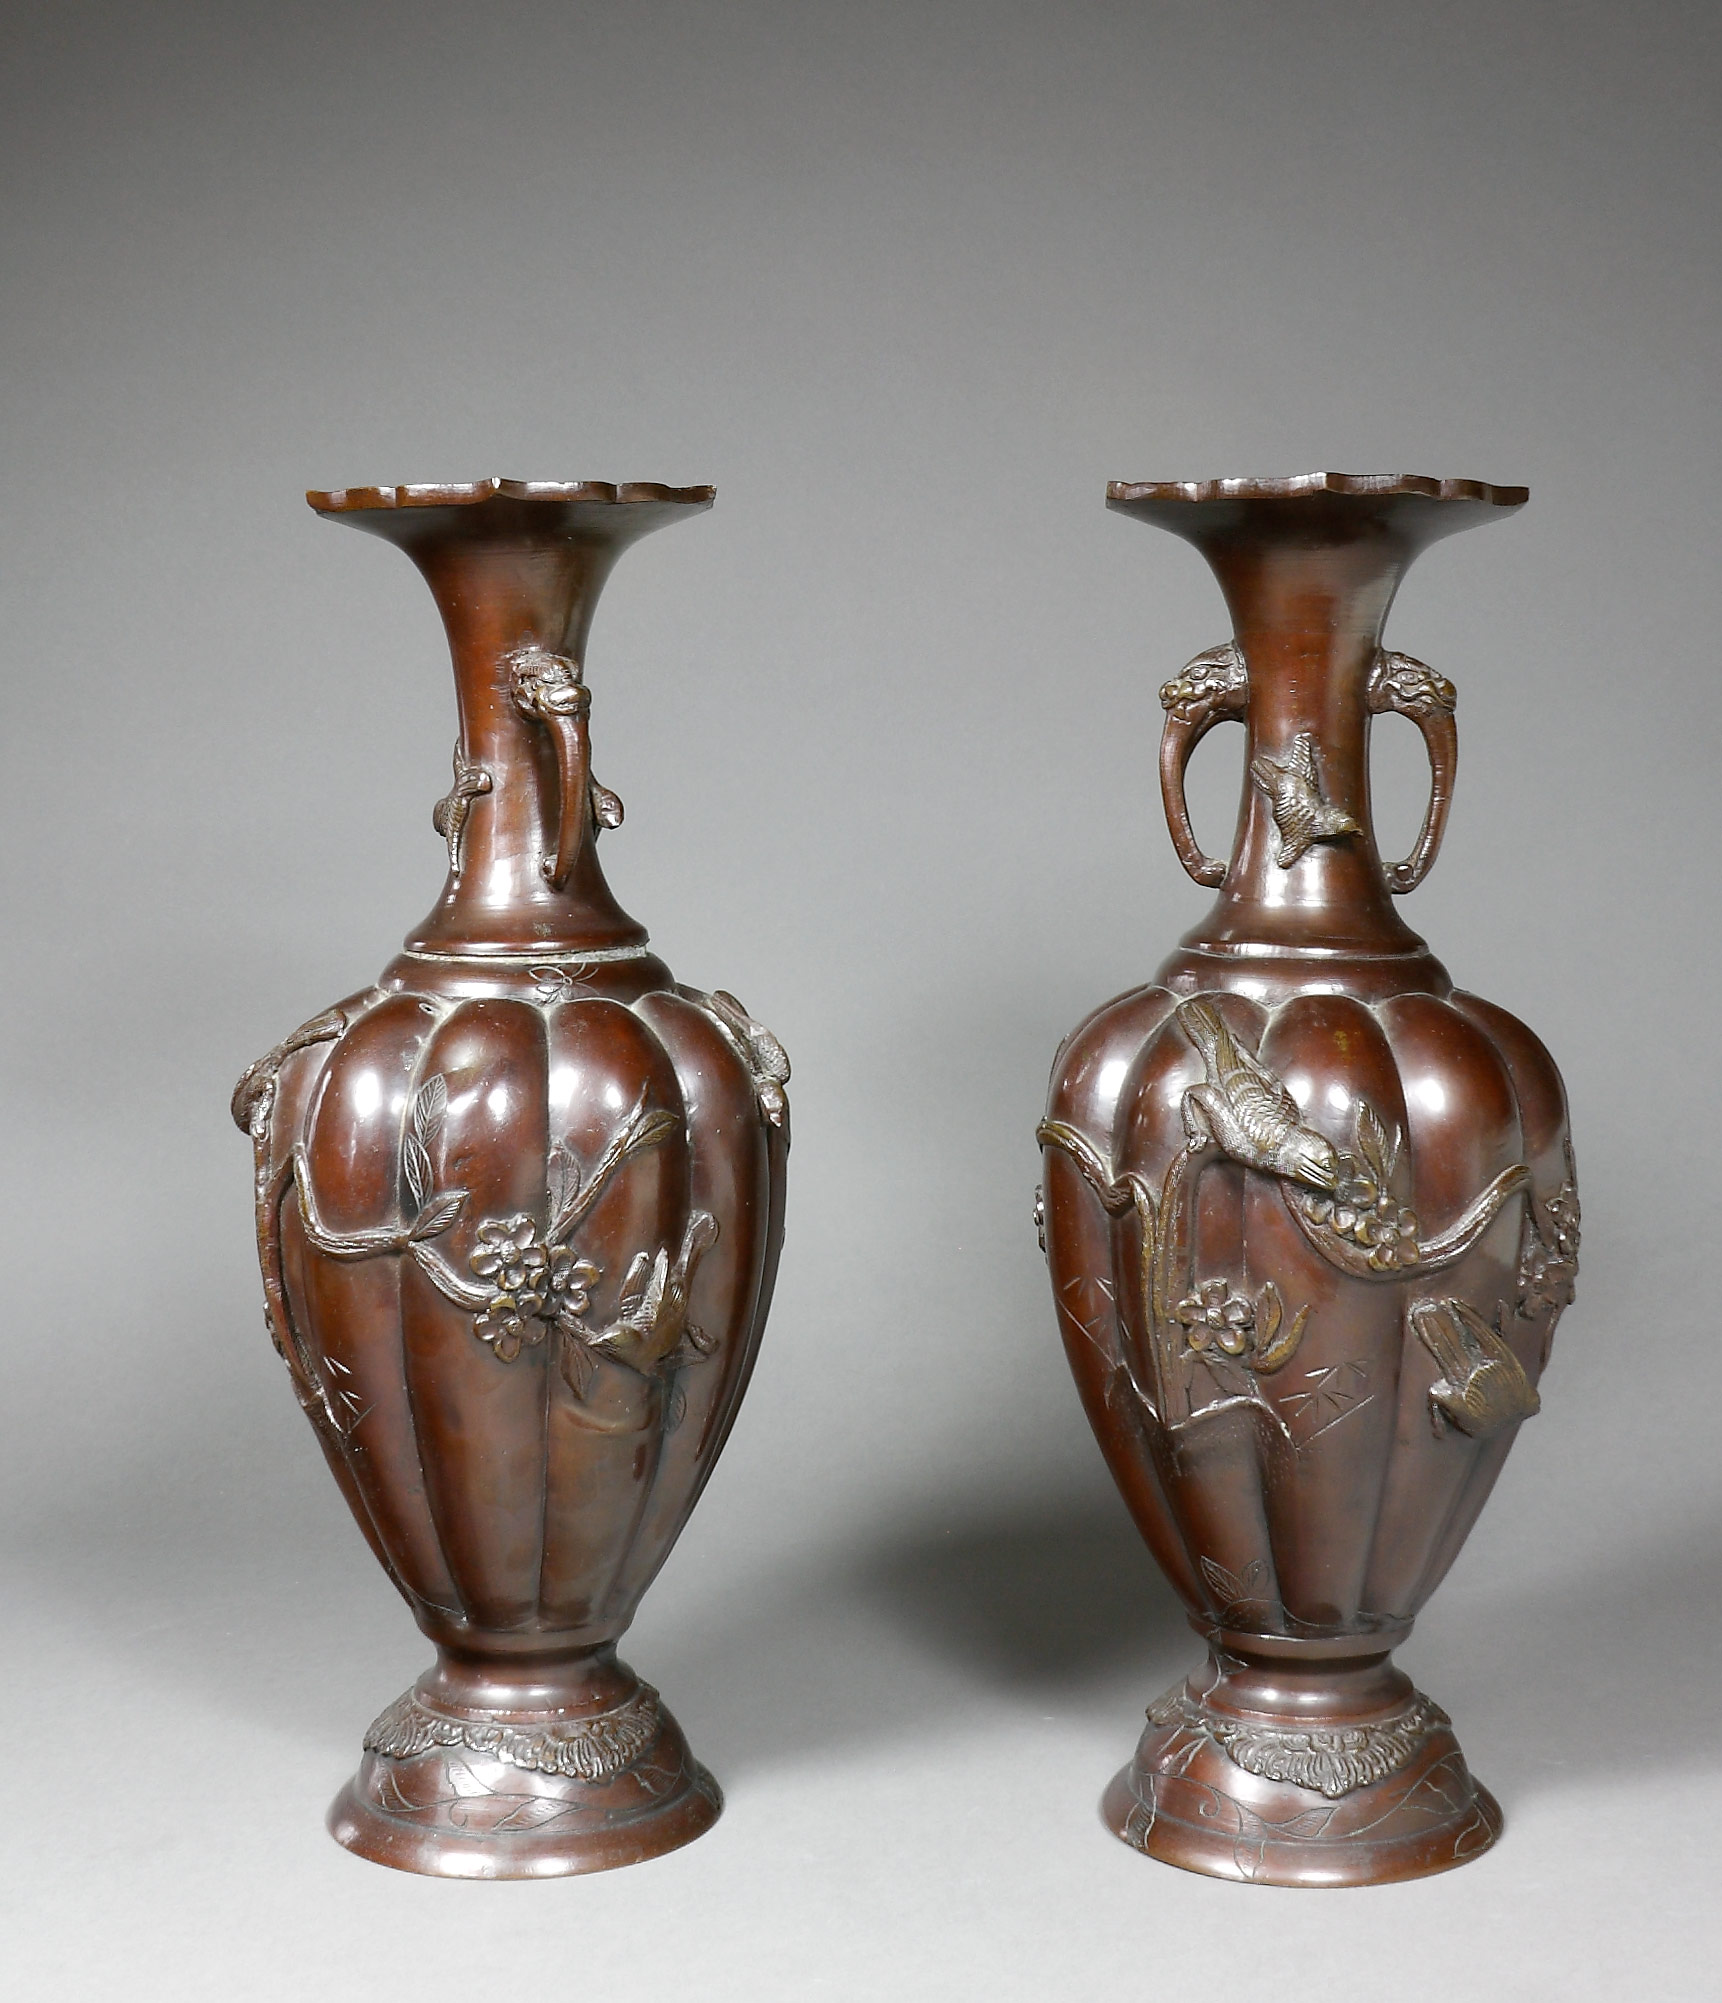 Auktionshaus Quentin Berlin  Asiatika Japan  Vasen  Bronze  Meiji  ein Paar Balusterform mit godronierter Wandung und erhabenem Reliefdekor von VÃ¶geln und Blumen. Am eingezogenen Hals z